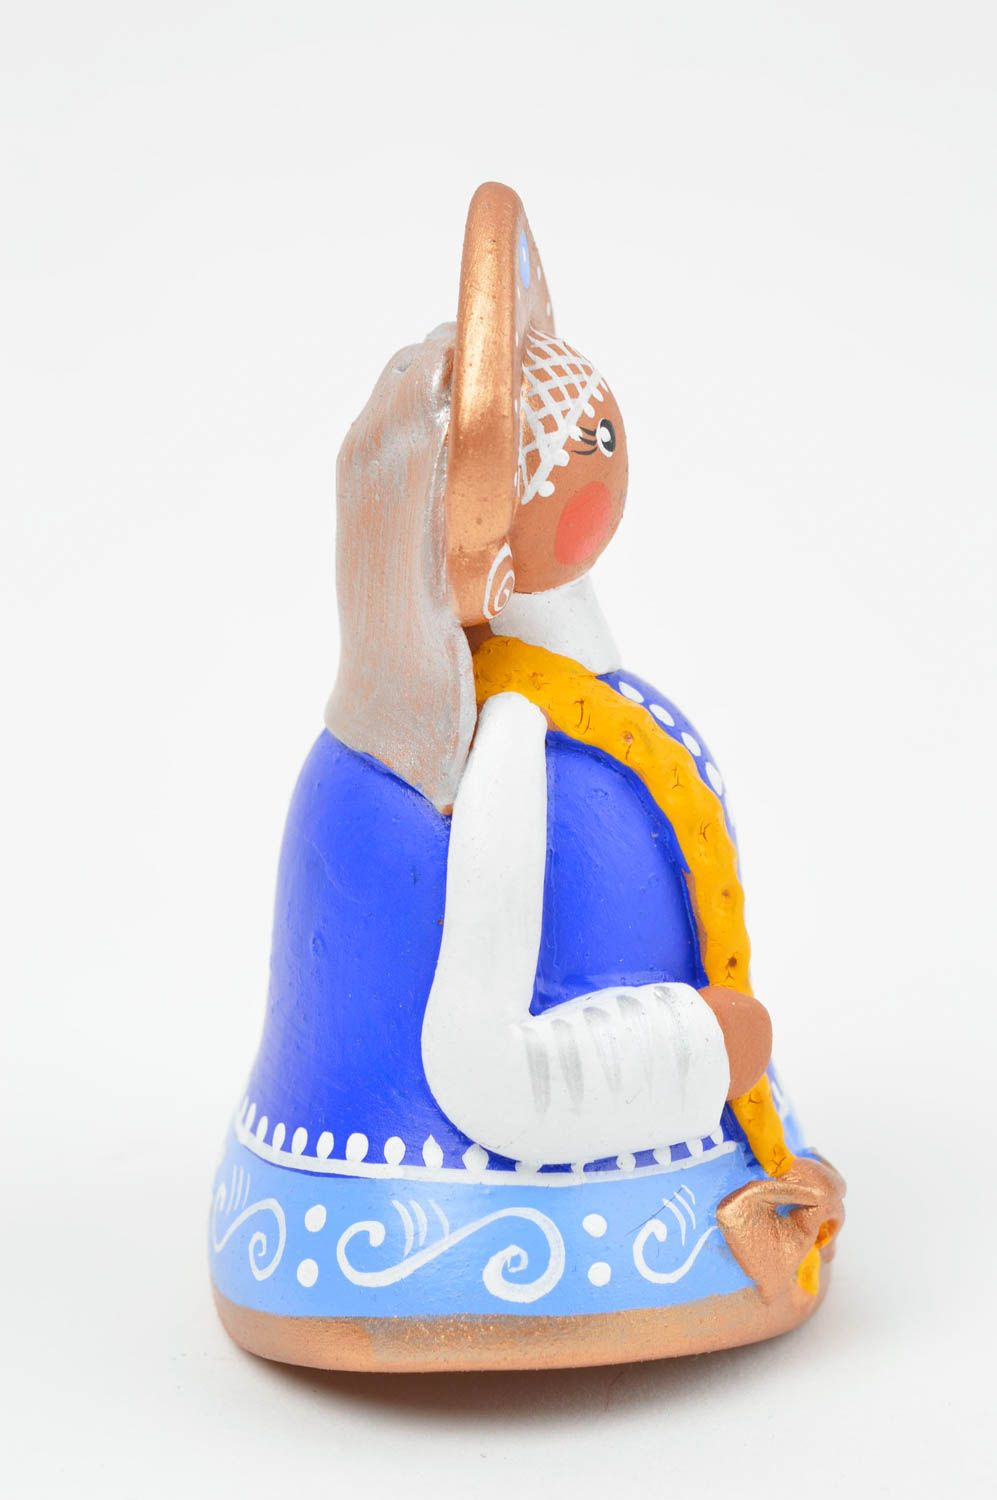 Синий глиняный колокольчик в виде девицы ручной работы расписанный красками фото 3